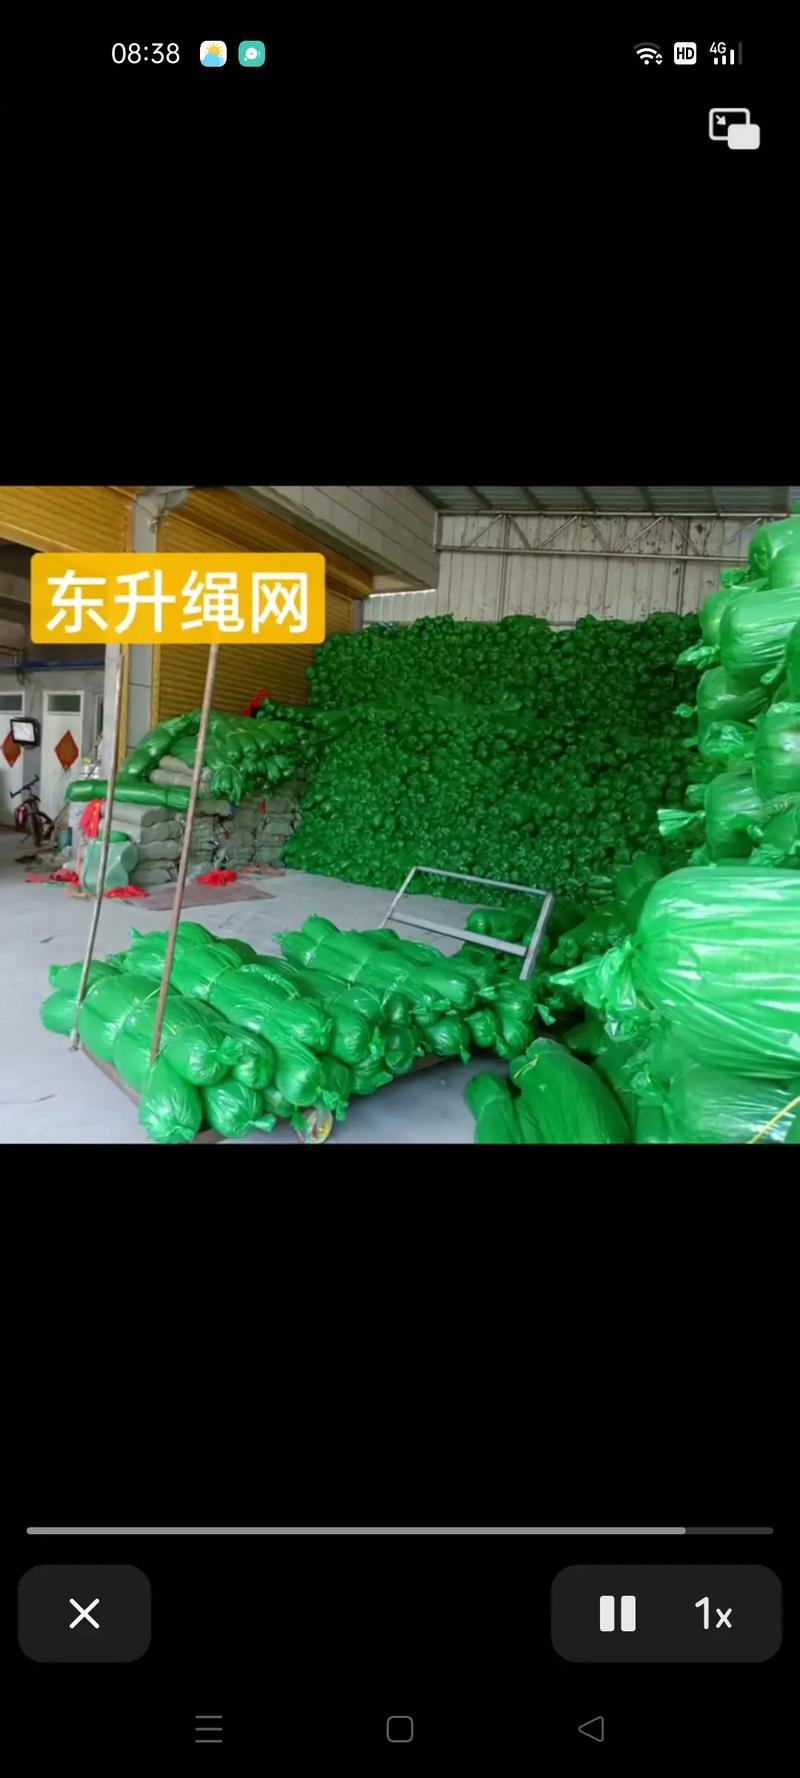 安徽省太和县肖口镇东升绳网有限公司.